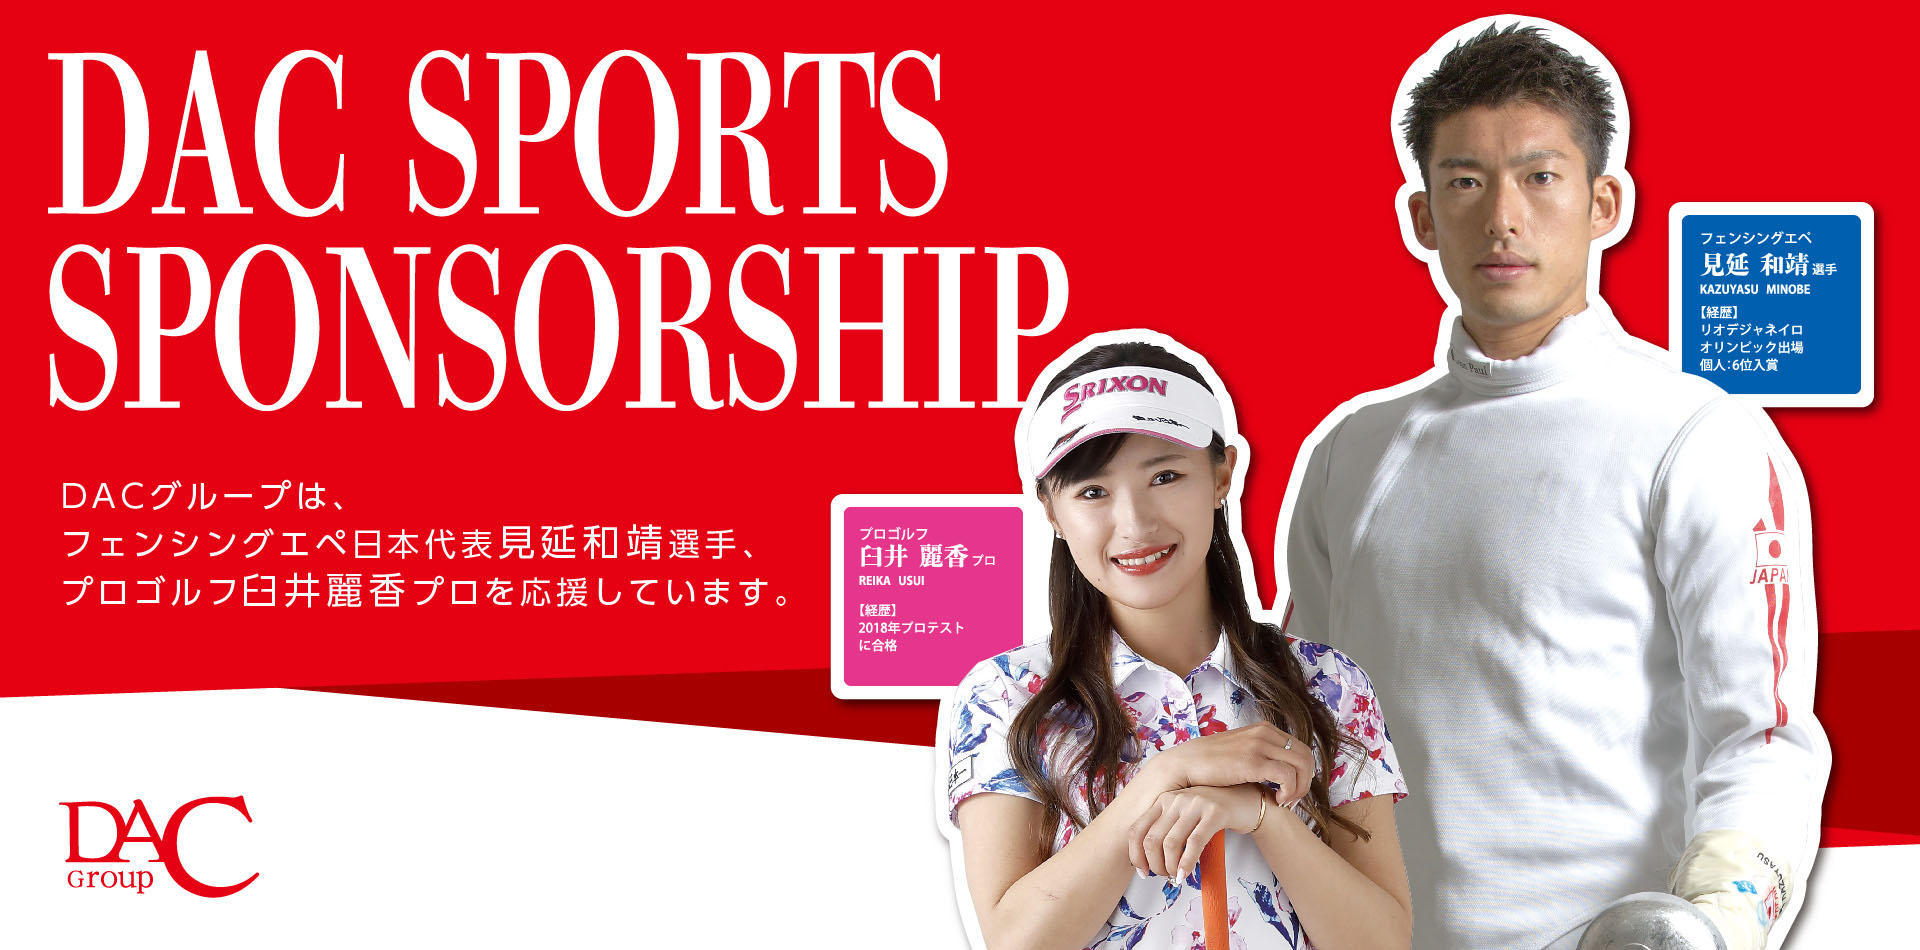 弊グループがフェンシングエペ日本代表・見延和靖選手、ゴルフ・臼井麗香プロとスポンサー契約を締結しました。